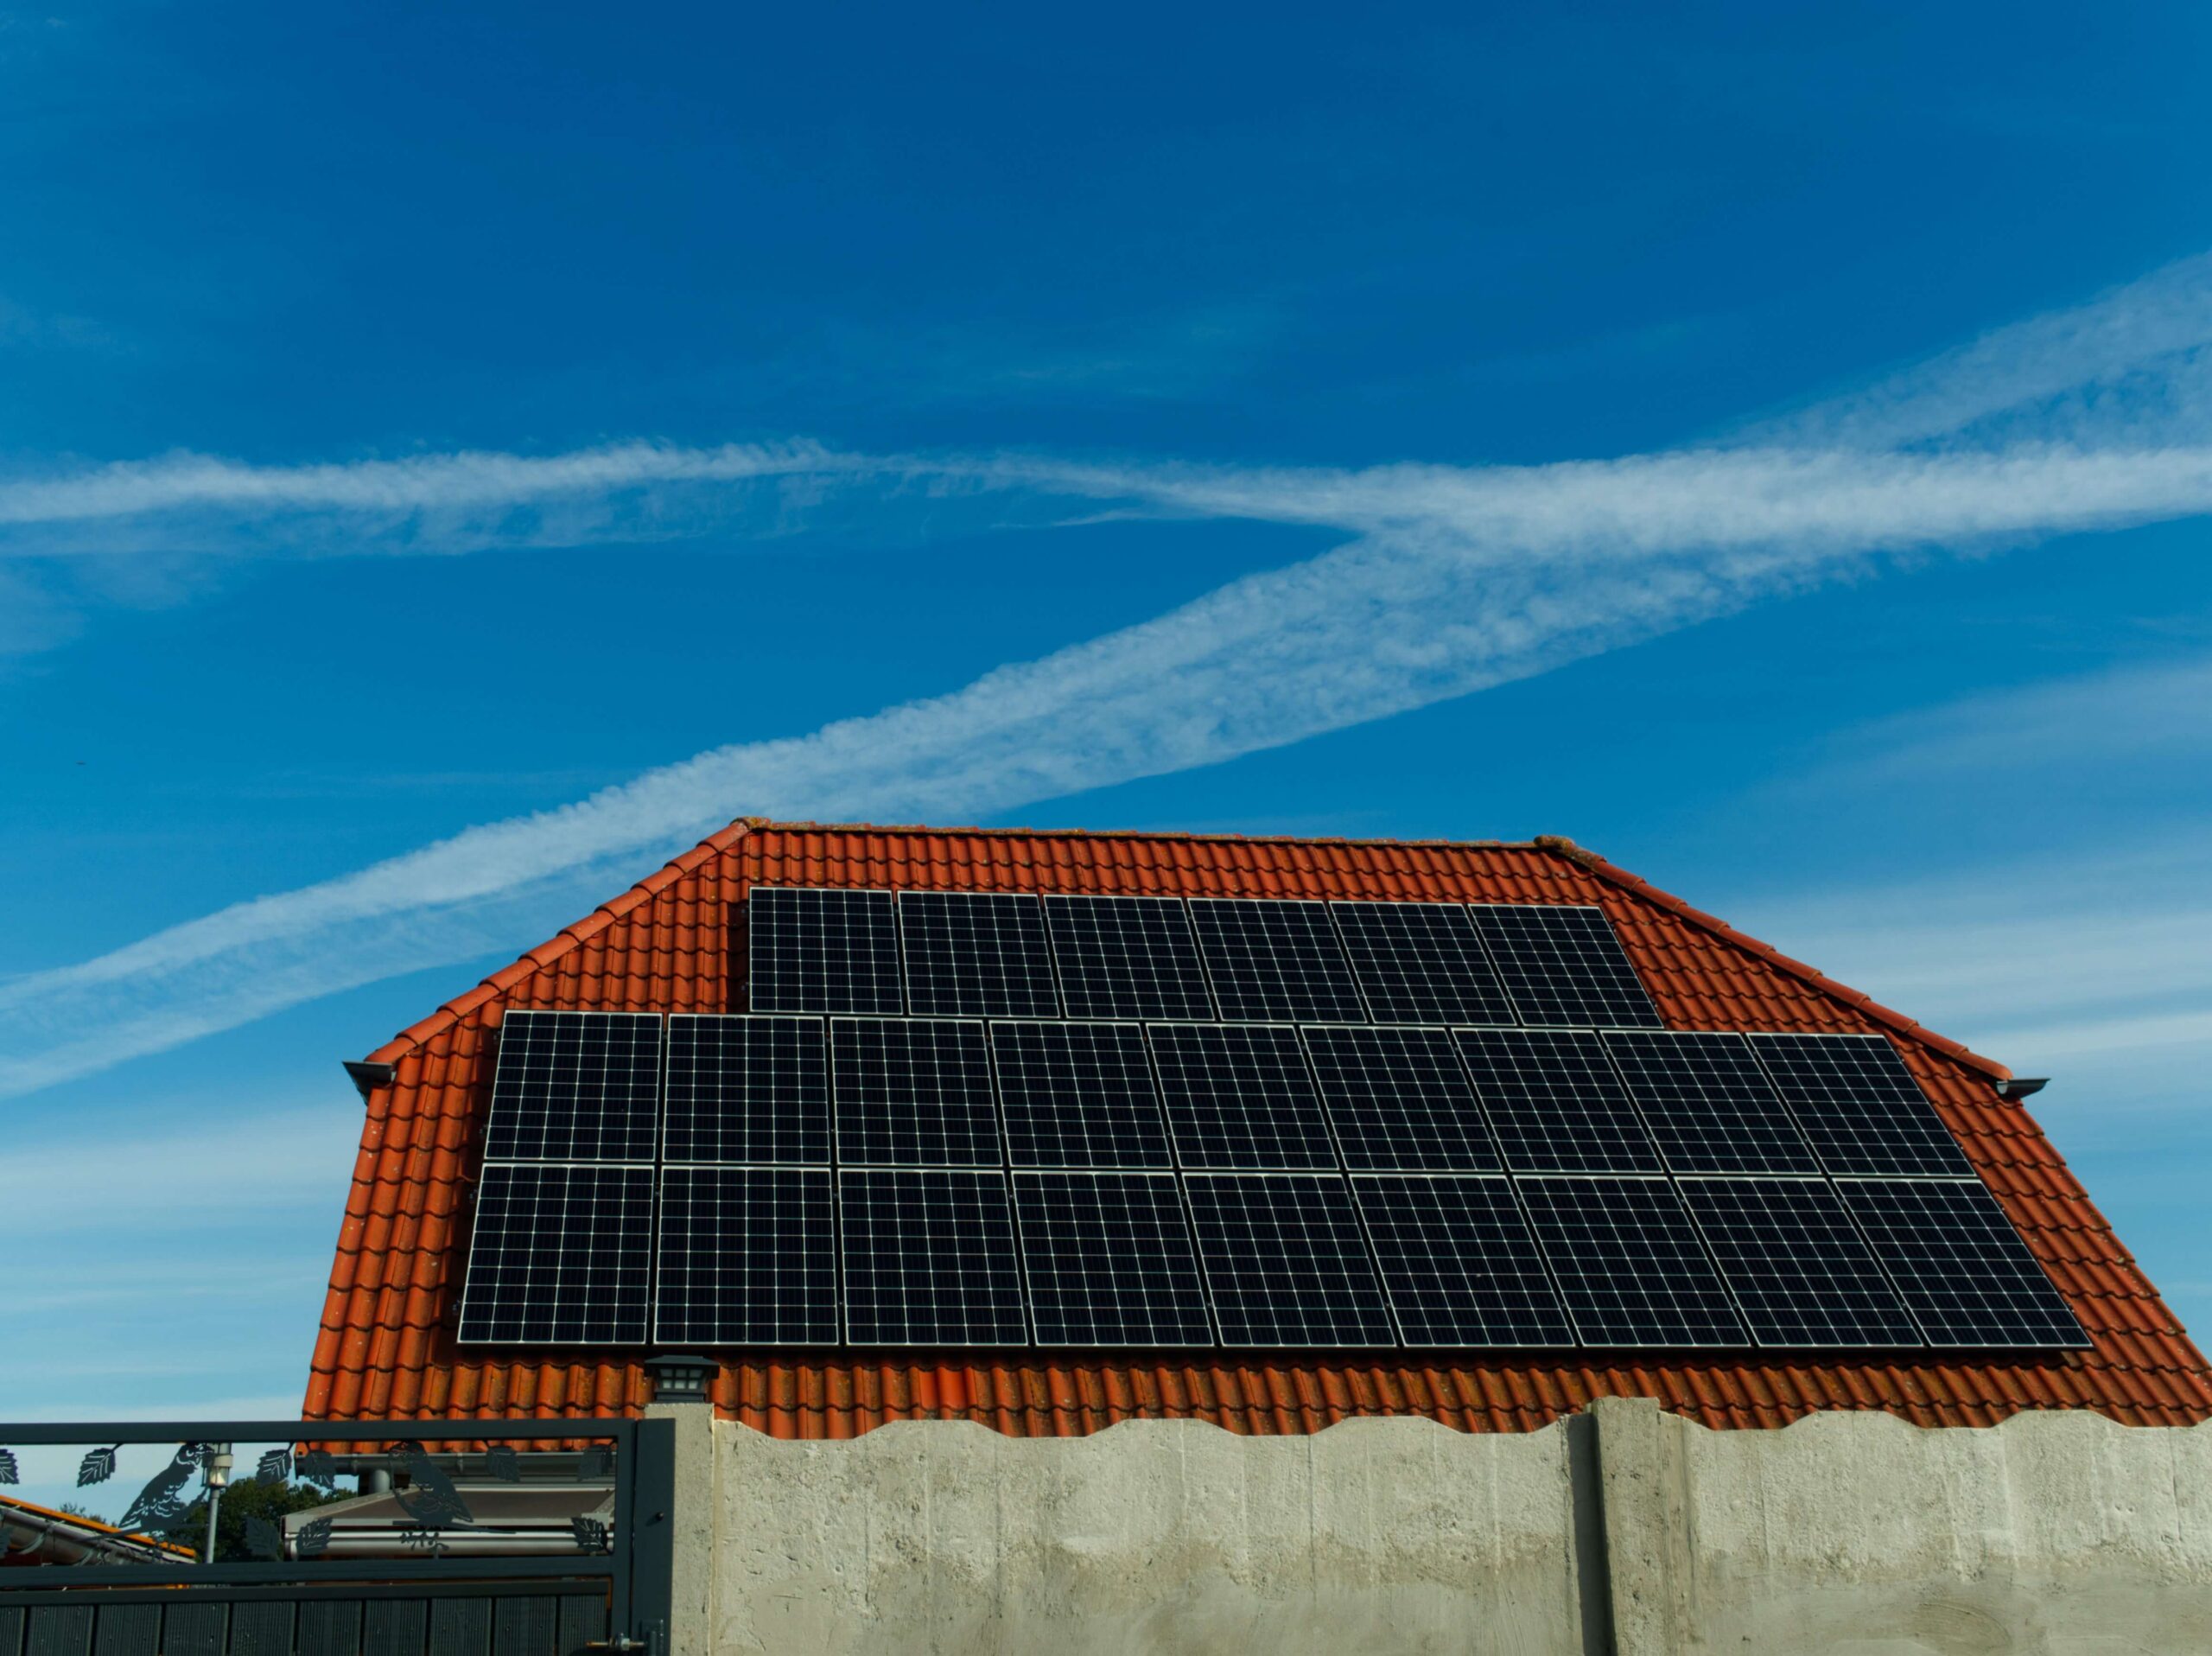 Επιδοτούμενα φωτοβολταϊκά στέγης: «Κάντο όπως με έναν ηλιακό θερμοσίφωνα» – Απόλυτη απλοποίηση στη διαδικασία εγκατάστασης από νοικοκυριά και επιχειρήσεις